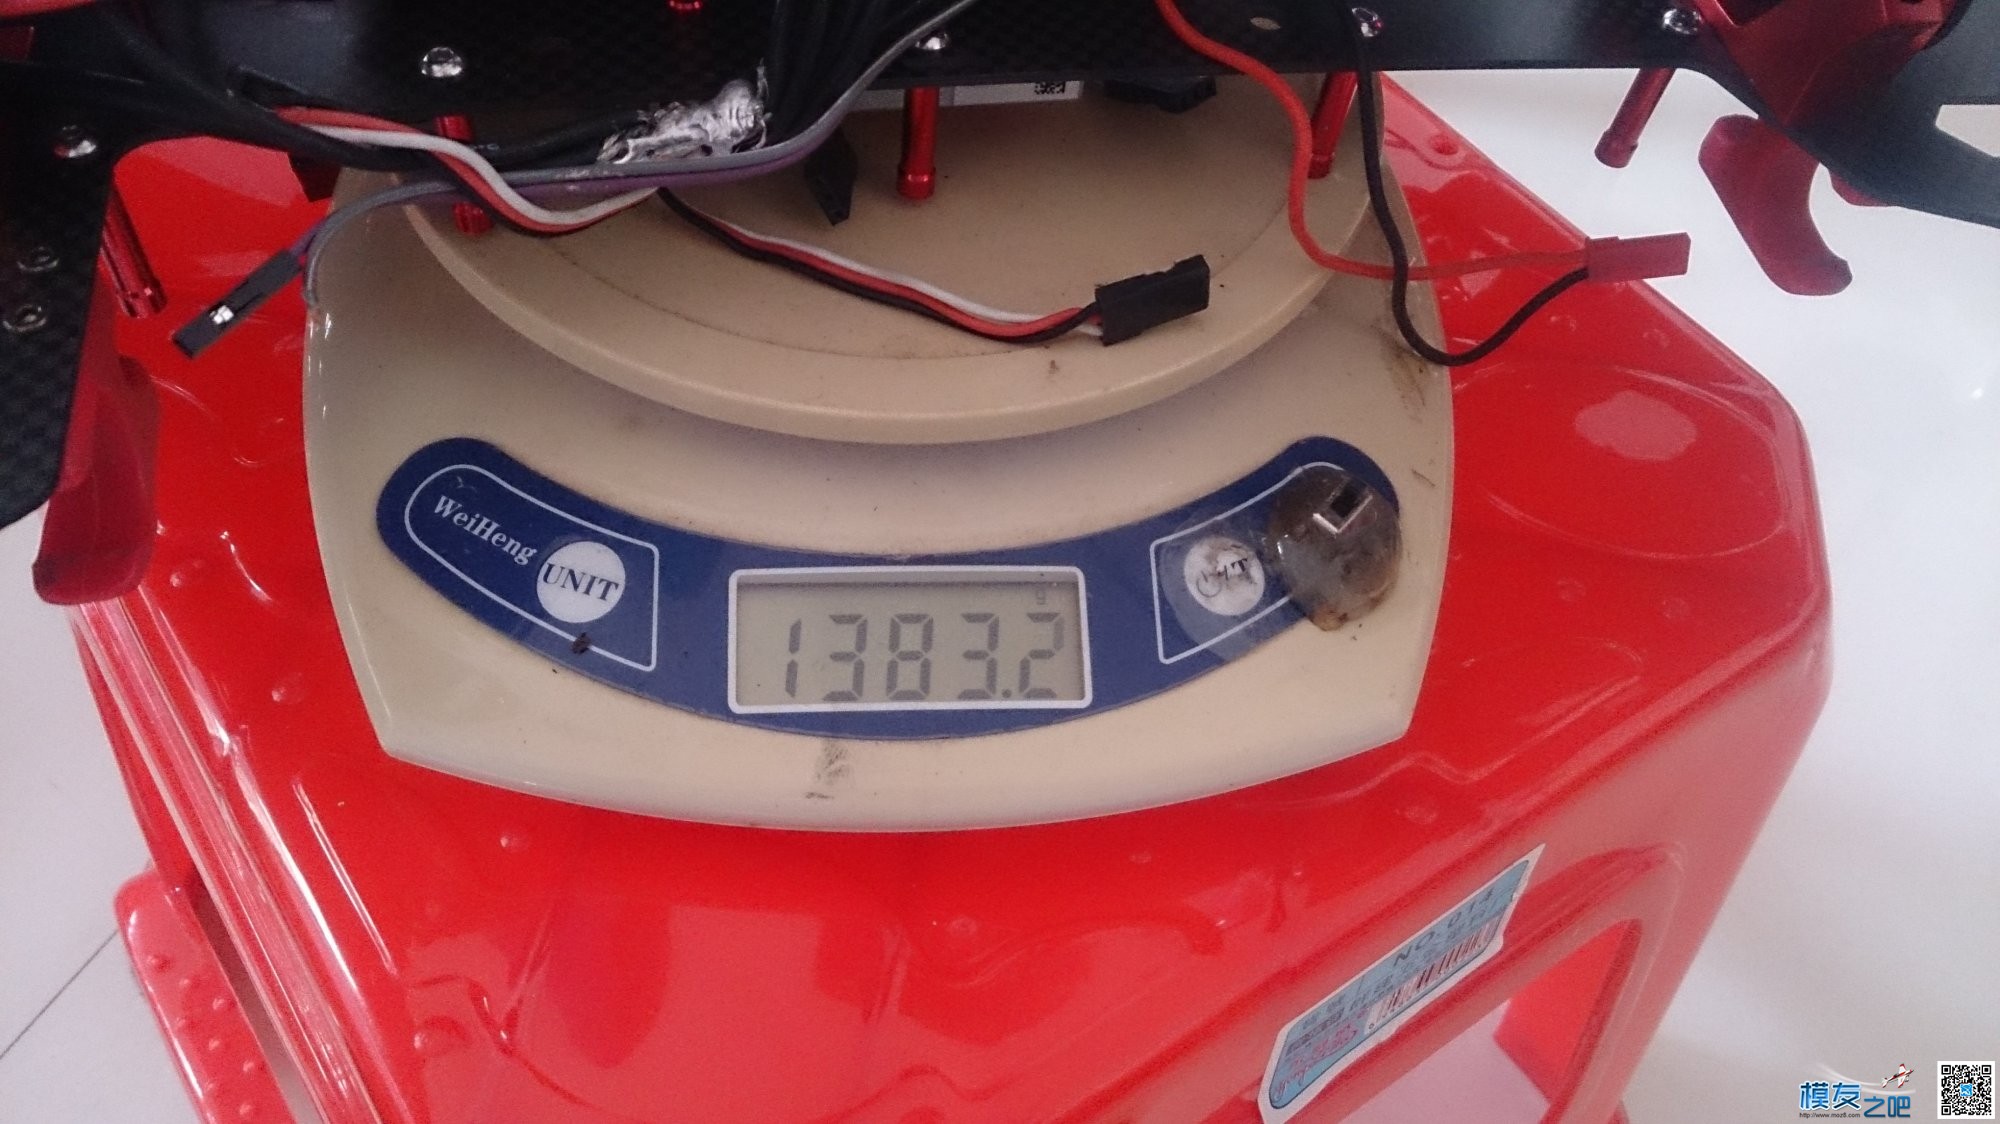 H4 680调试（帮别人调试的） 电池,充电器,云台,飞控,电调 作者:啊诺 5596 